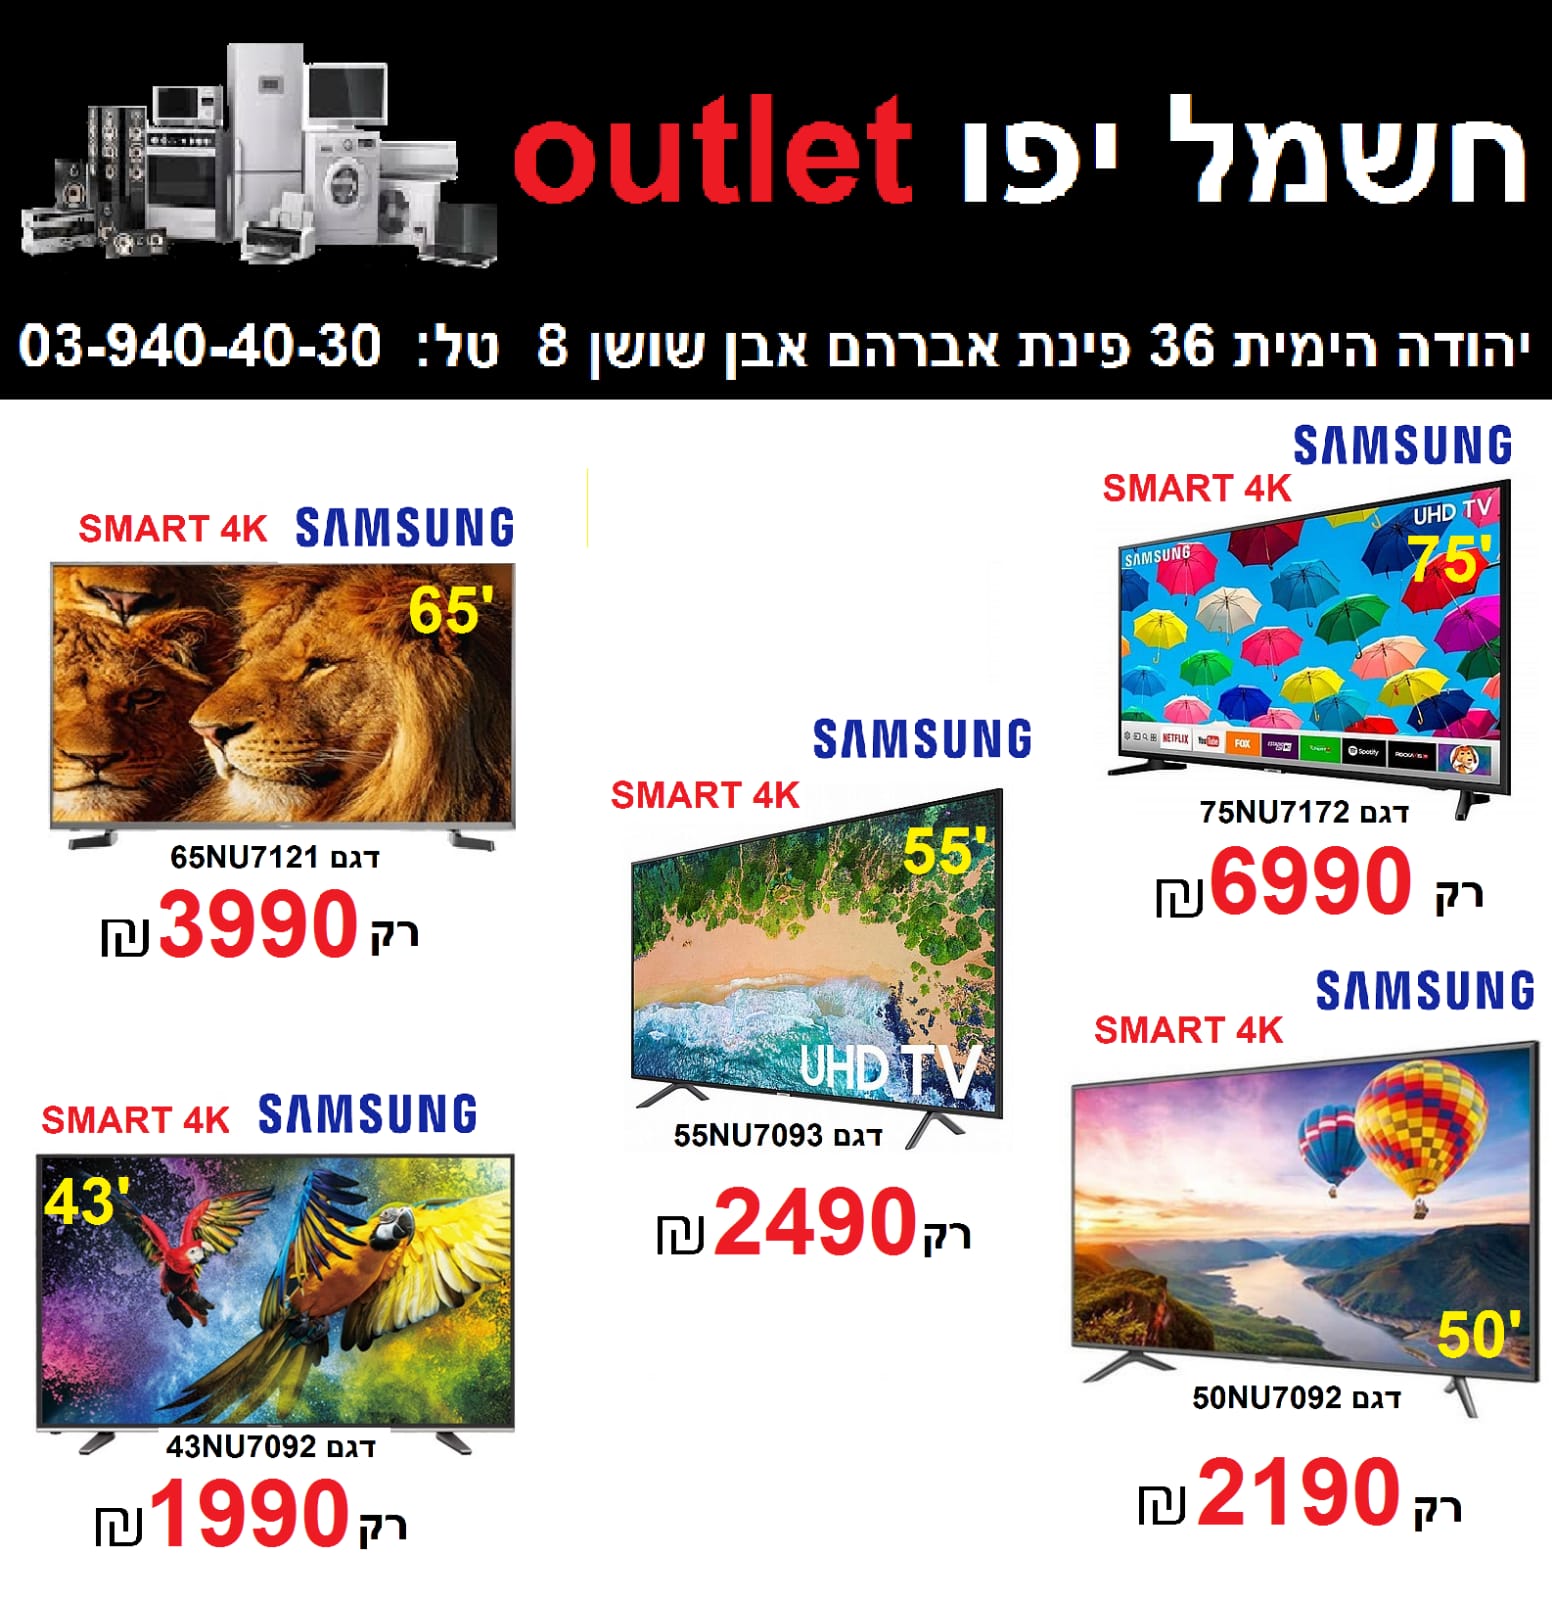  طالع الأسعار - حملة تخفيضات مجنونة على الأجهزة الكهربائية في صالة كهرباء يافا Outlet